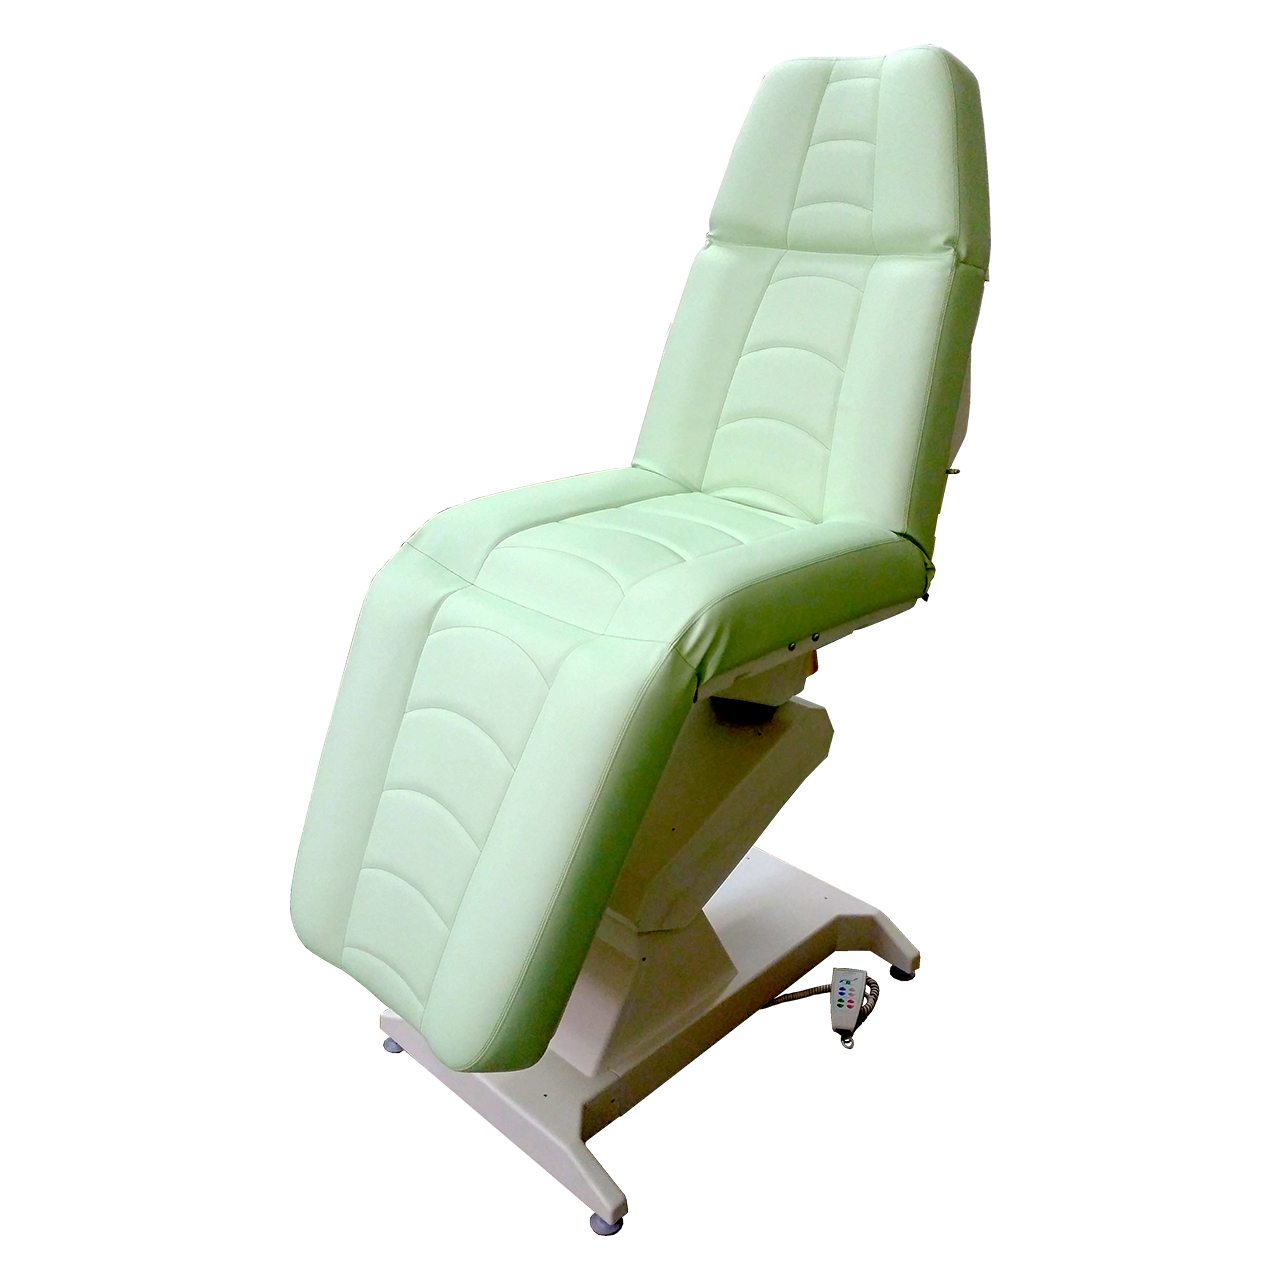 Кресло процедурное с электроприводом ОД-4, с ножной педалью управления.